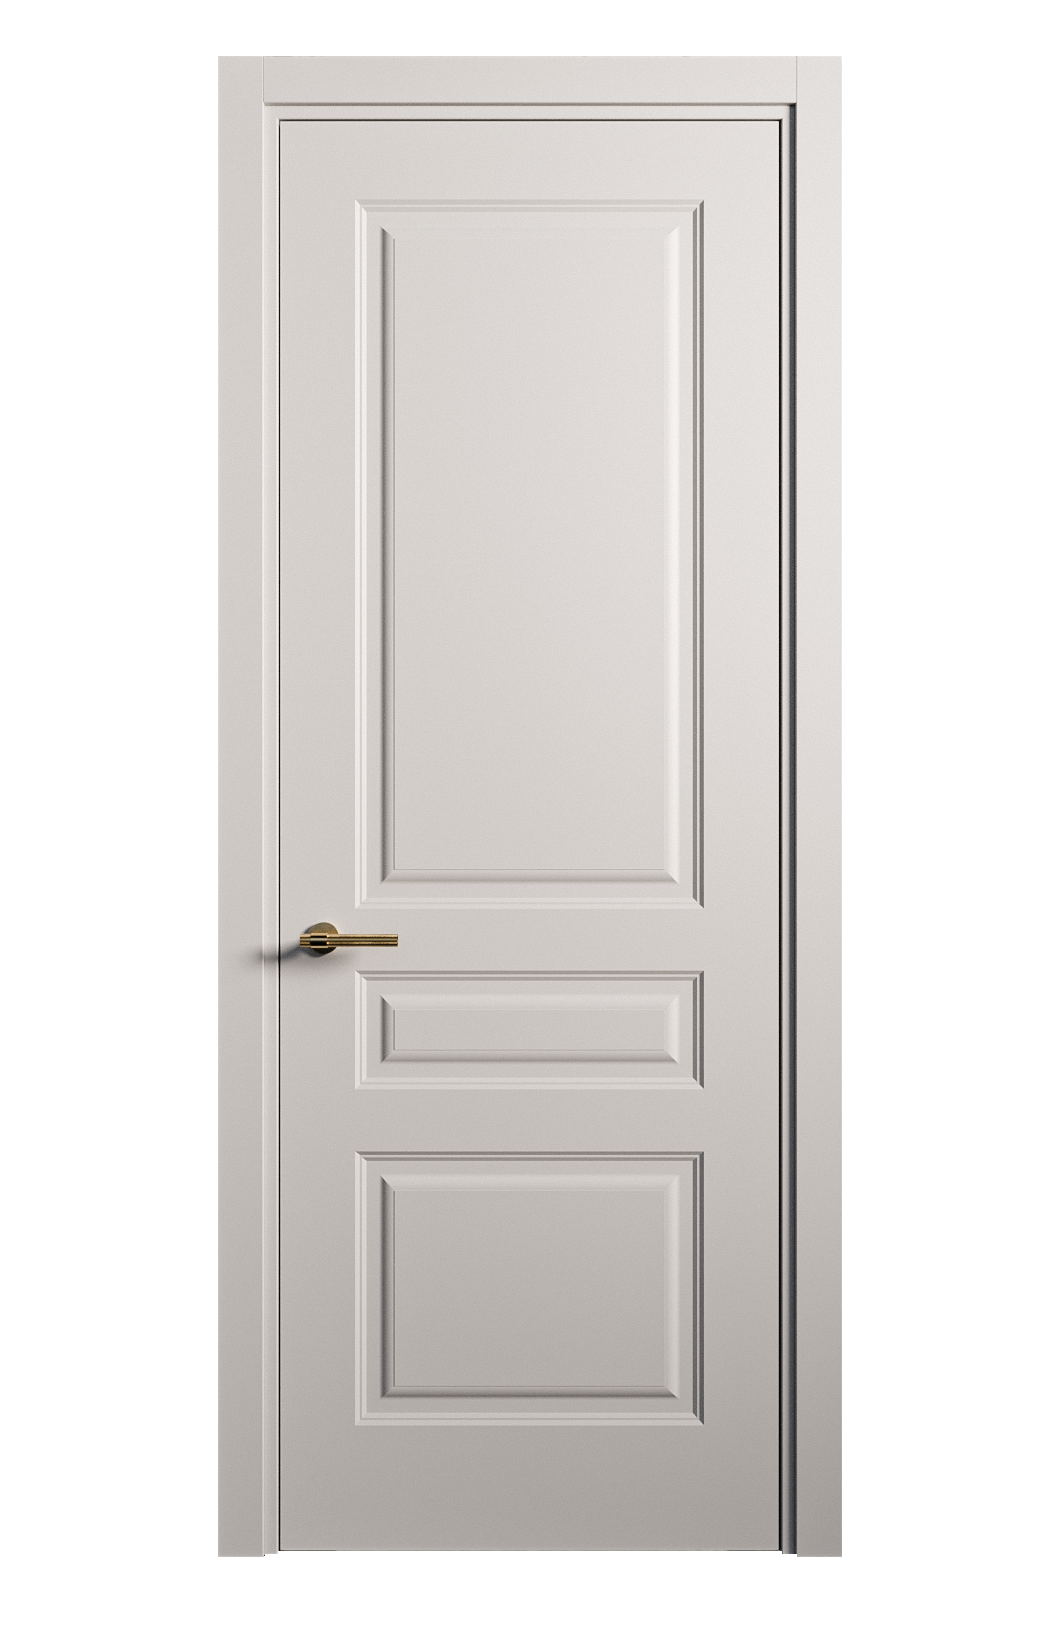 Межкомнатная дверь Вита-2 глухая эмаль ral 7047 26399